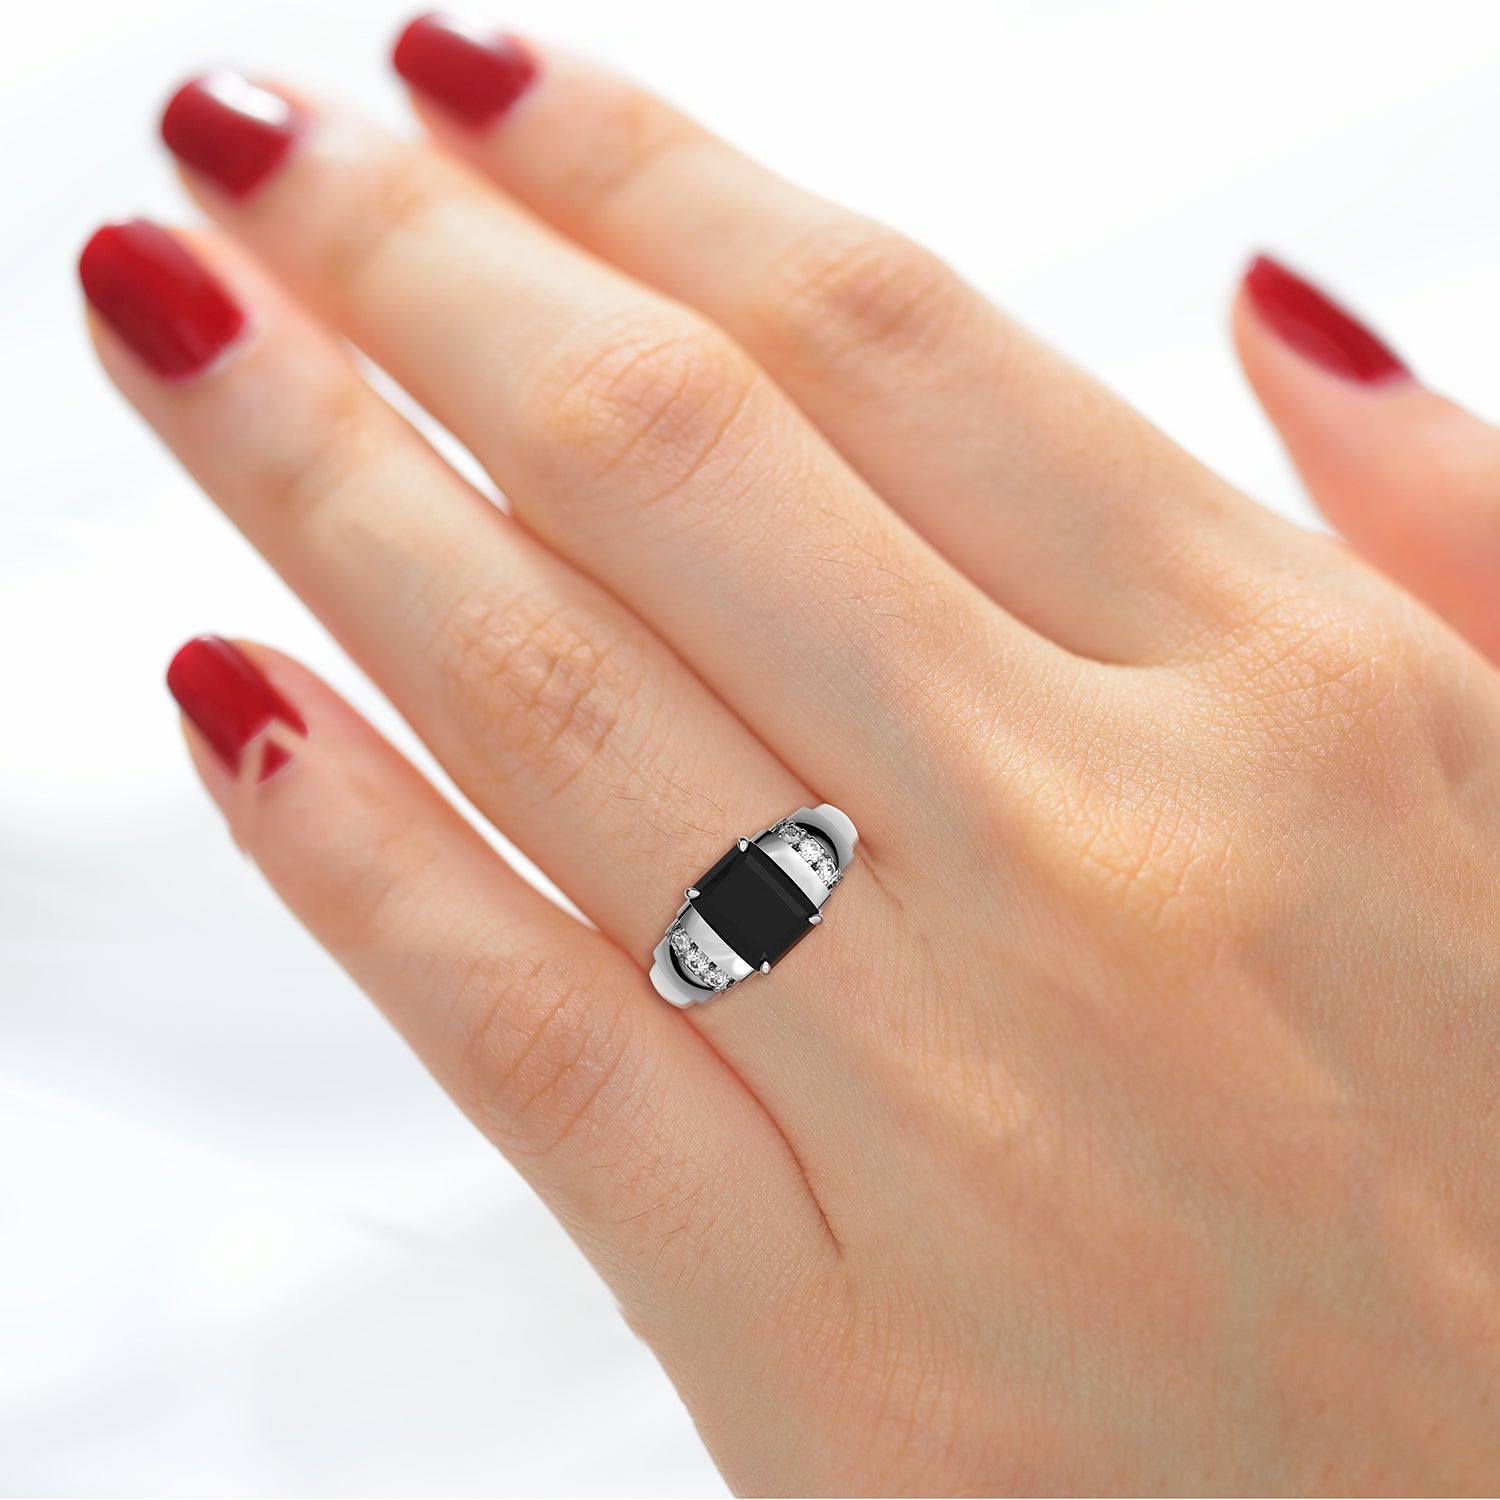 Black Onyx Ring for Women, Handmade Ring, Simple Black Stone Ring, Gift for  Her, December Birthstone Ring, Promise Ring, Black Onyx Ring - Etsy